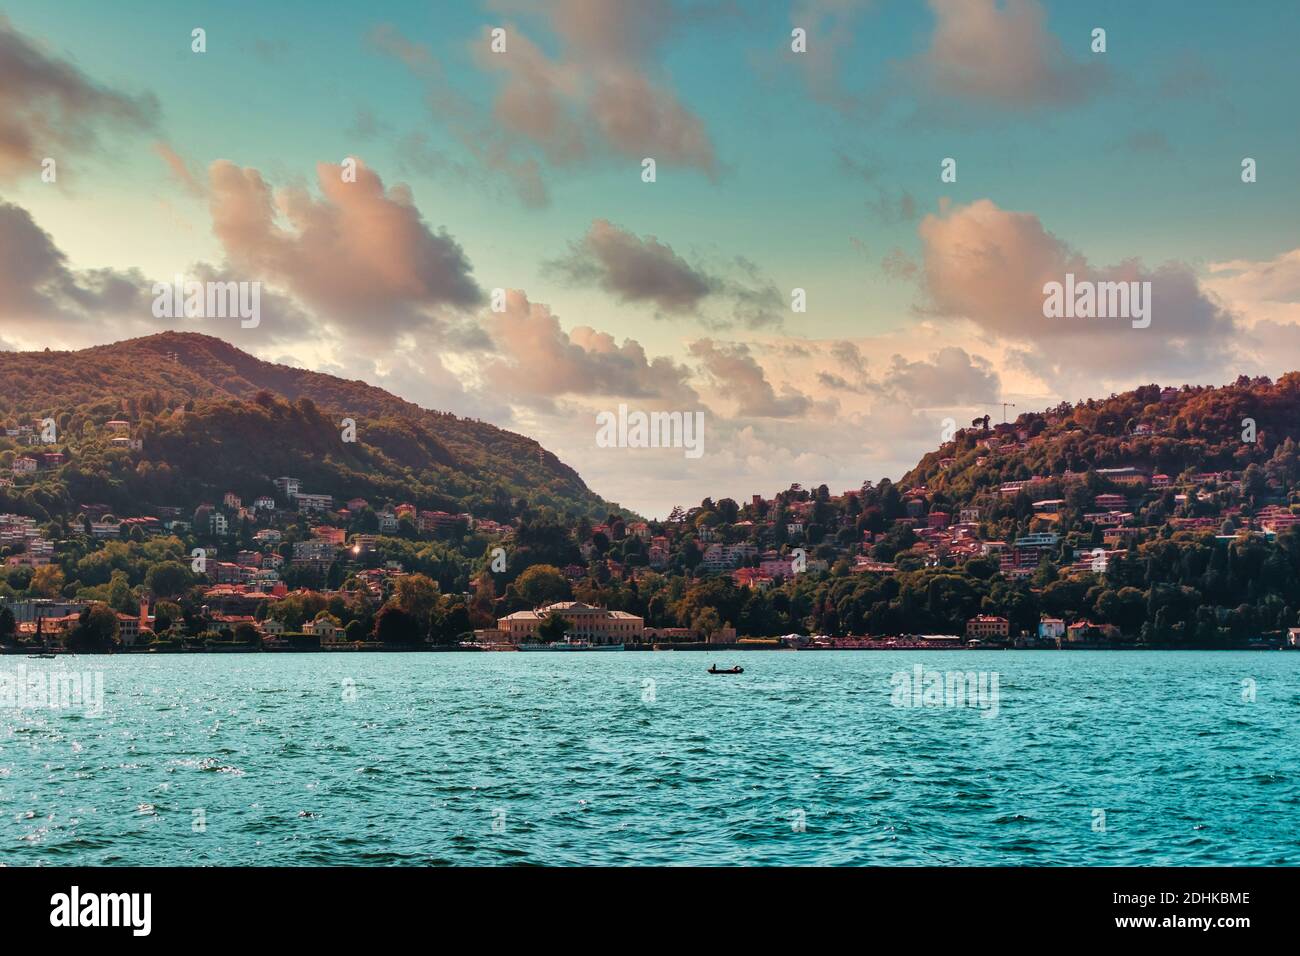 Lago di Como bellissimo paesaggio orizzonte d'acqua turchese con città e villaggi su altre sponde e montagne in Lombardia, Italia Foto Stock